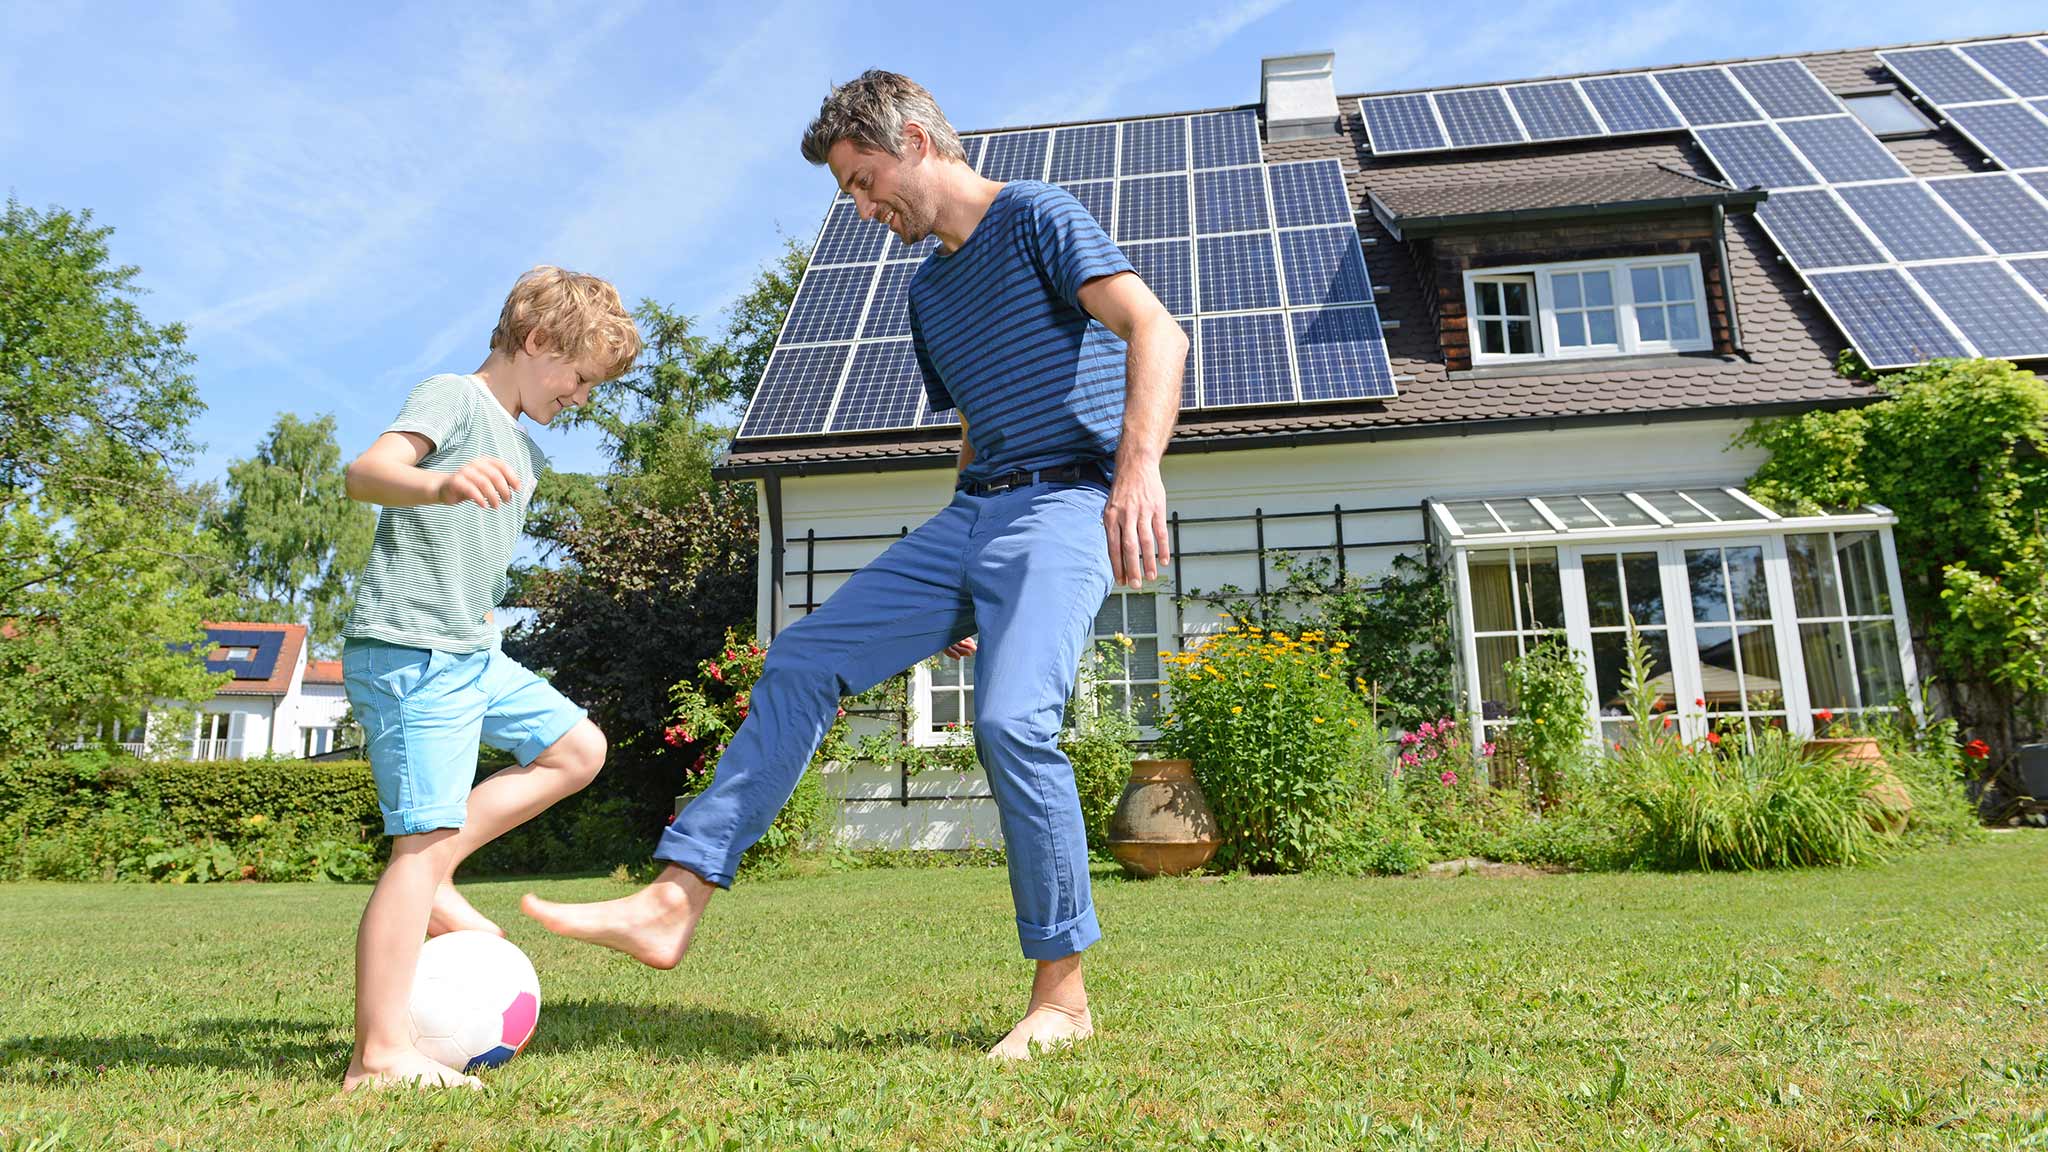 Mann und Kind spielen Fussball auf der Wiese vor einer Solaranlage auf dem Dach.